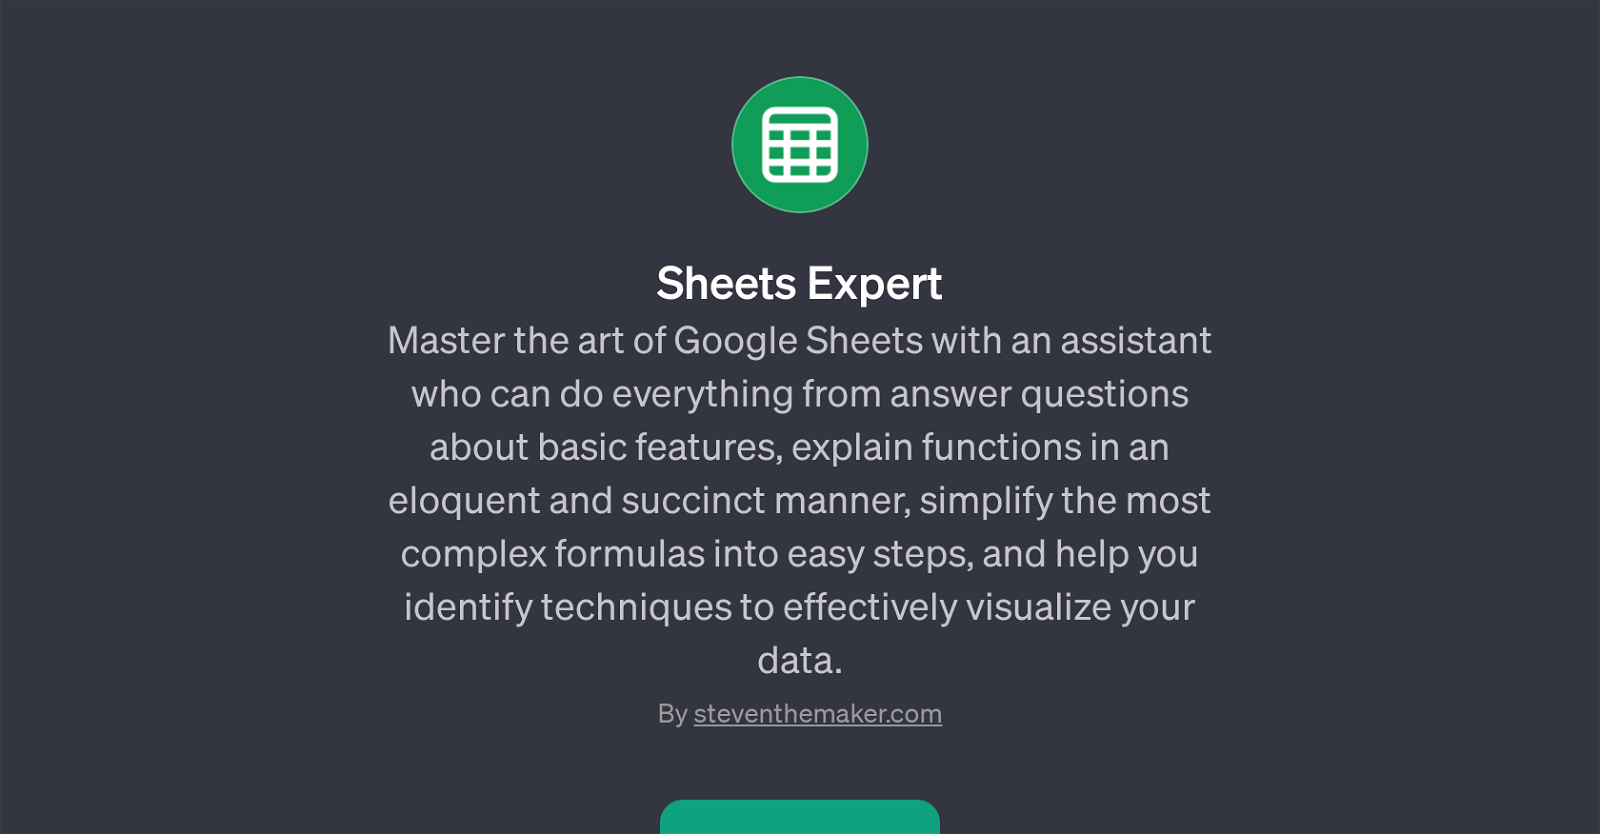 Sheets Expert website